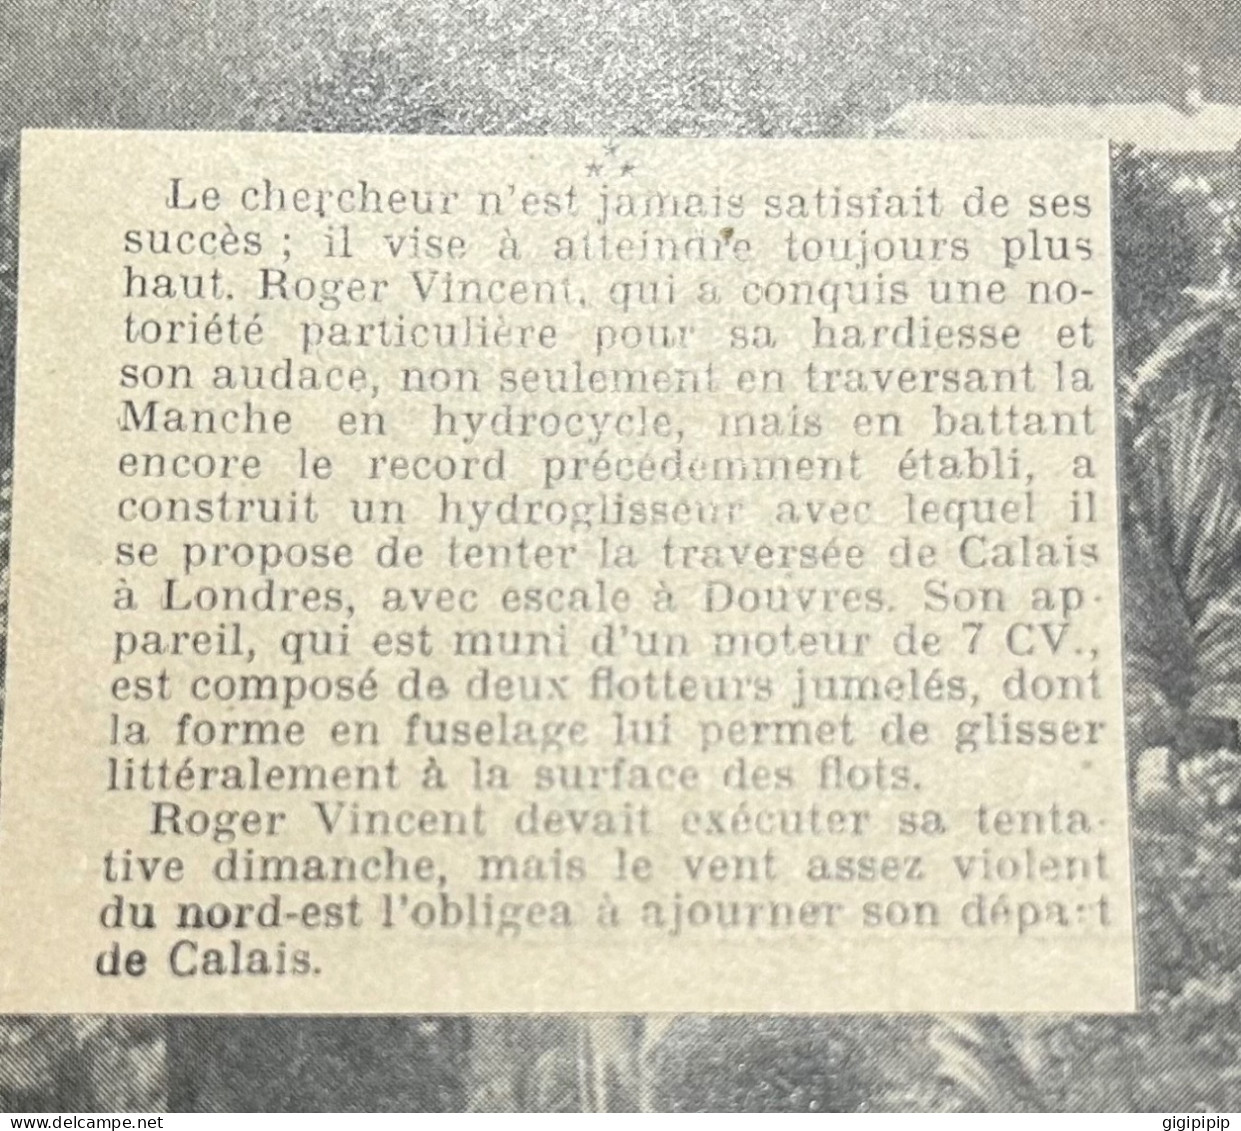 1930 GHI18 L'HYDRO-GLISSEUR A MOTEUR AVEC LEQUEL ROGER VINCENT VA TENTER LA TRAVERSÉE DE LA MANCHE Hydrocycle Rampeur - Collections